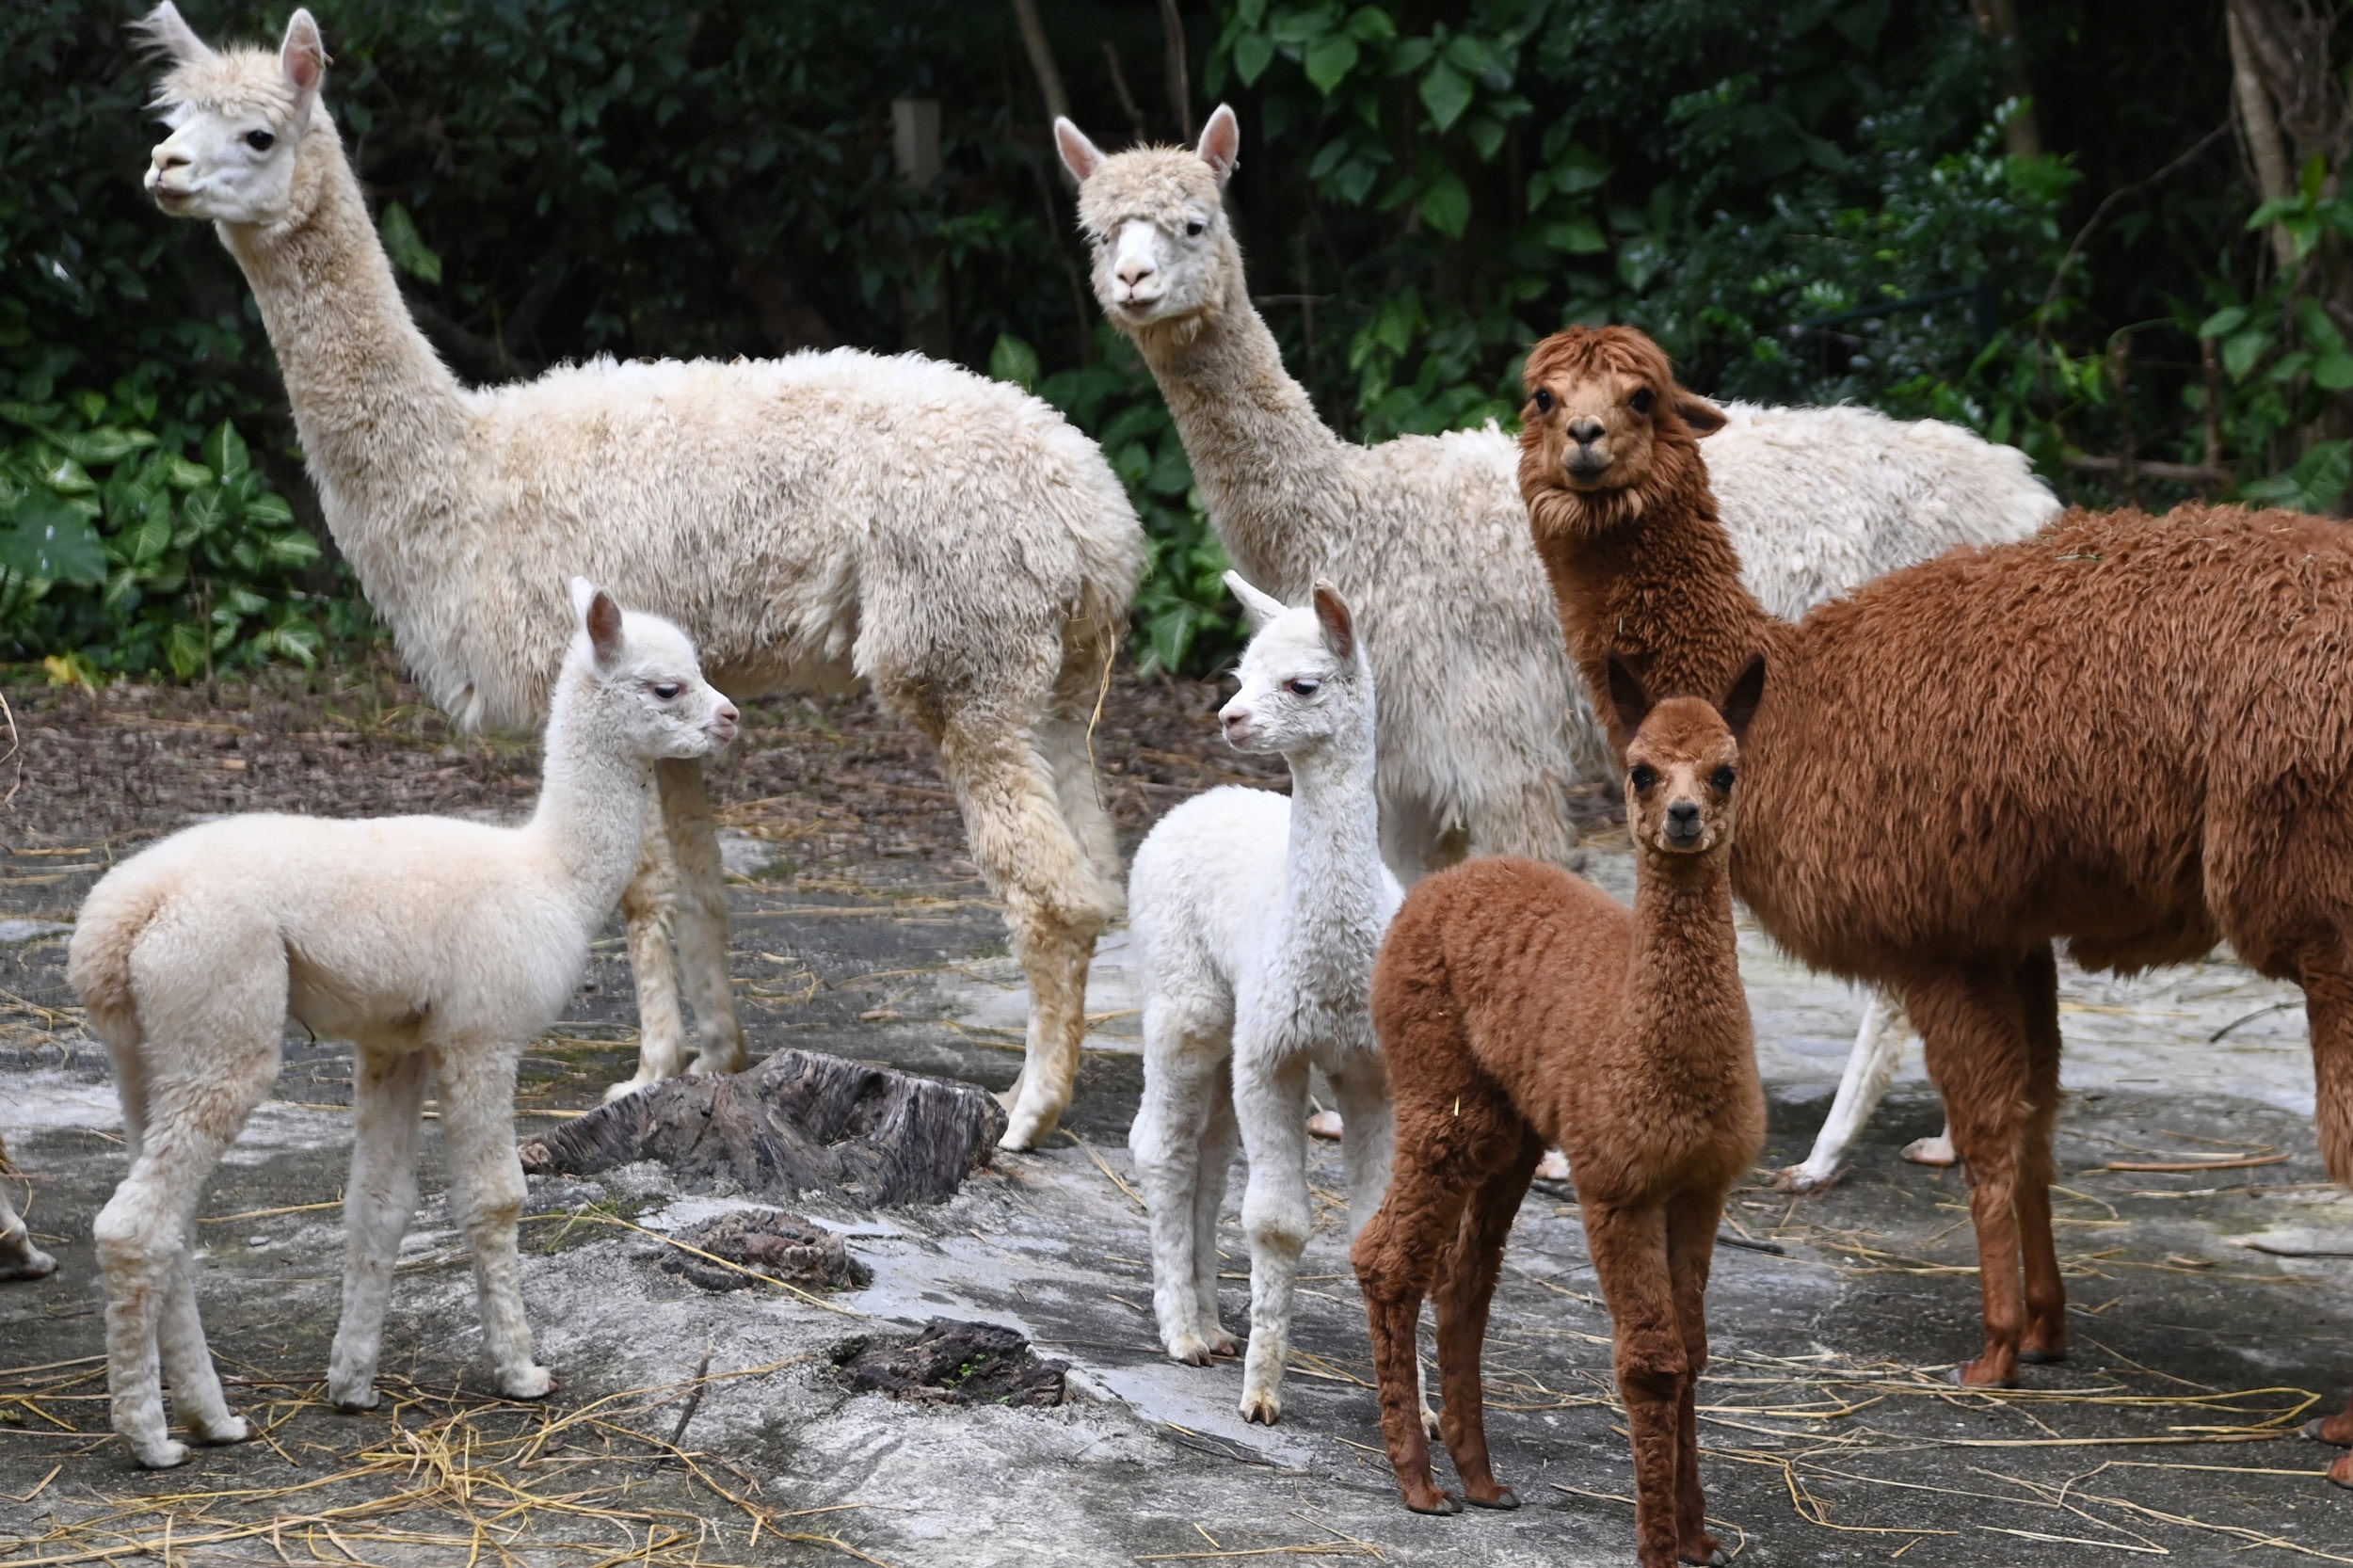 深圳野生动物园小羊驼家族喜添三娃